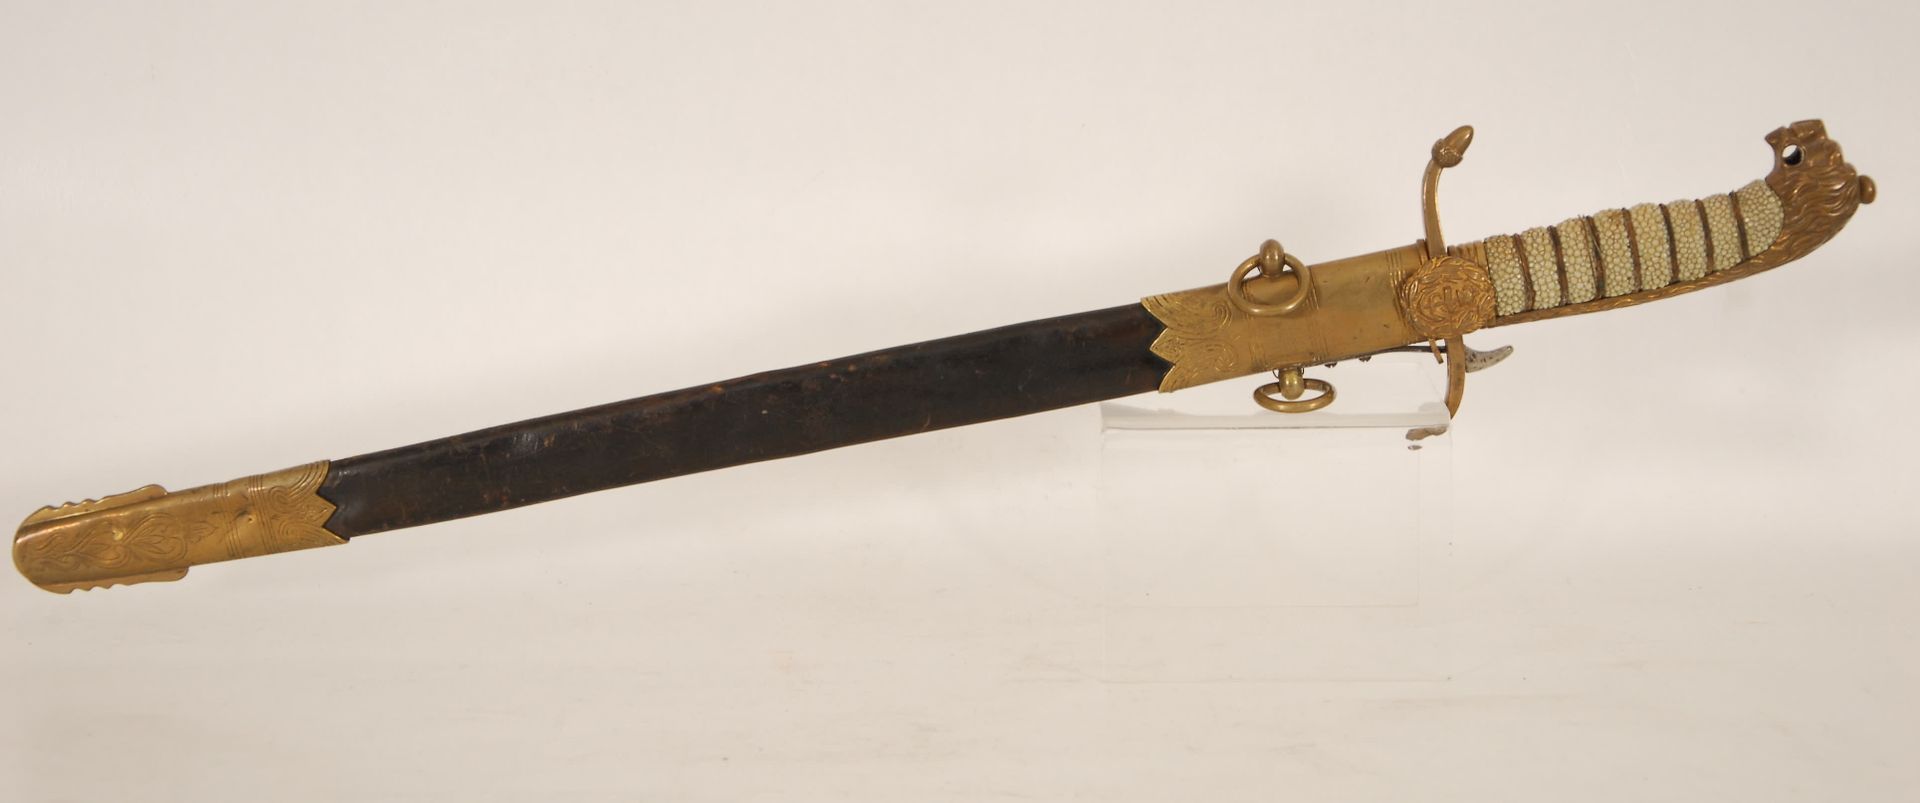 Null 海军军官的匕首
雕刻的单刃刀。狮头鞍座和花纹手柄。青铜、铜和皮革衬里的刀鞘。19世纪。
，长60厘米。